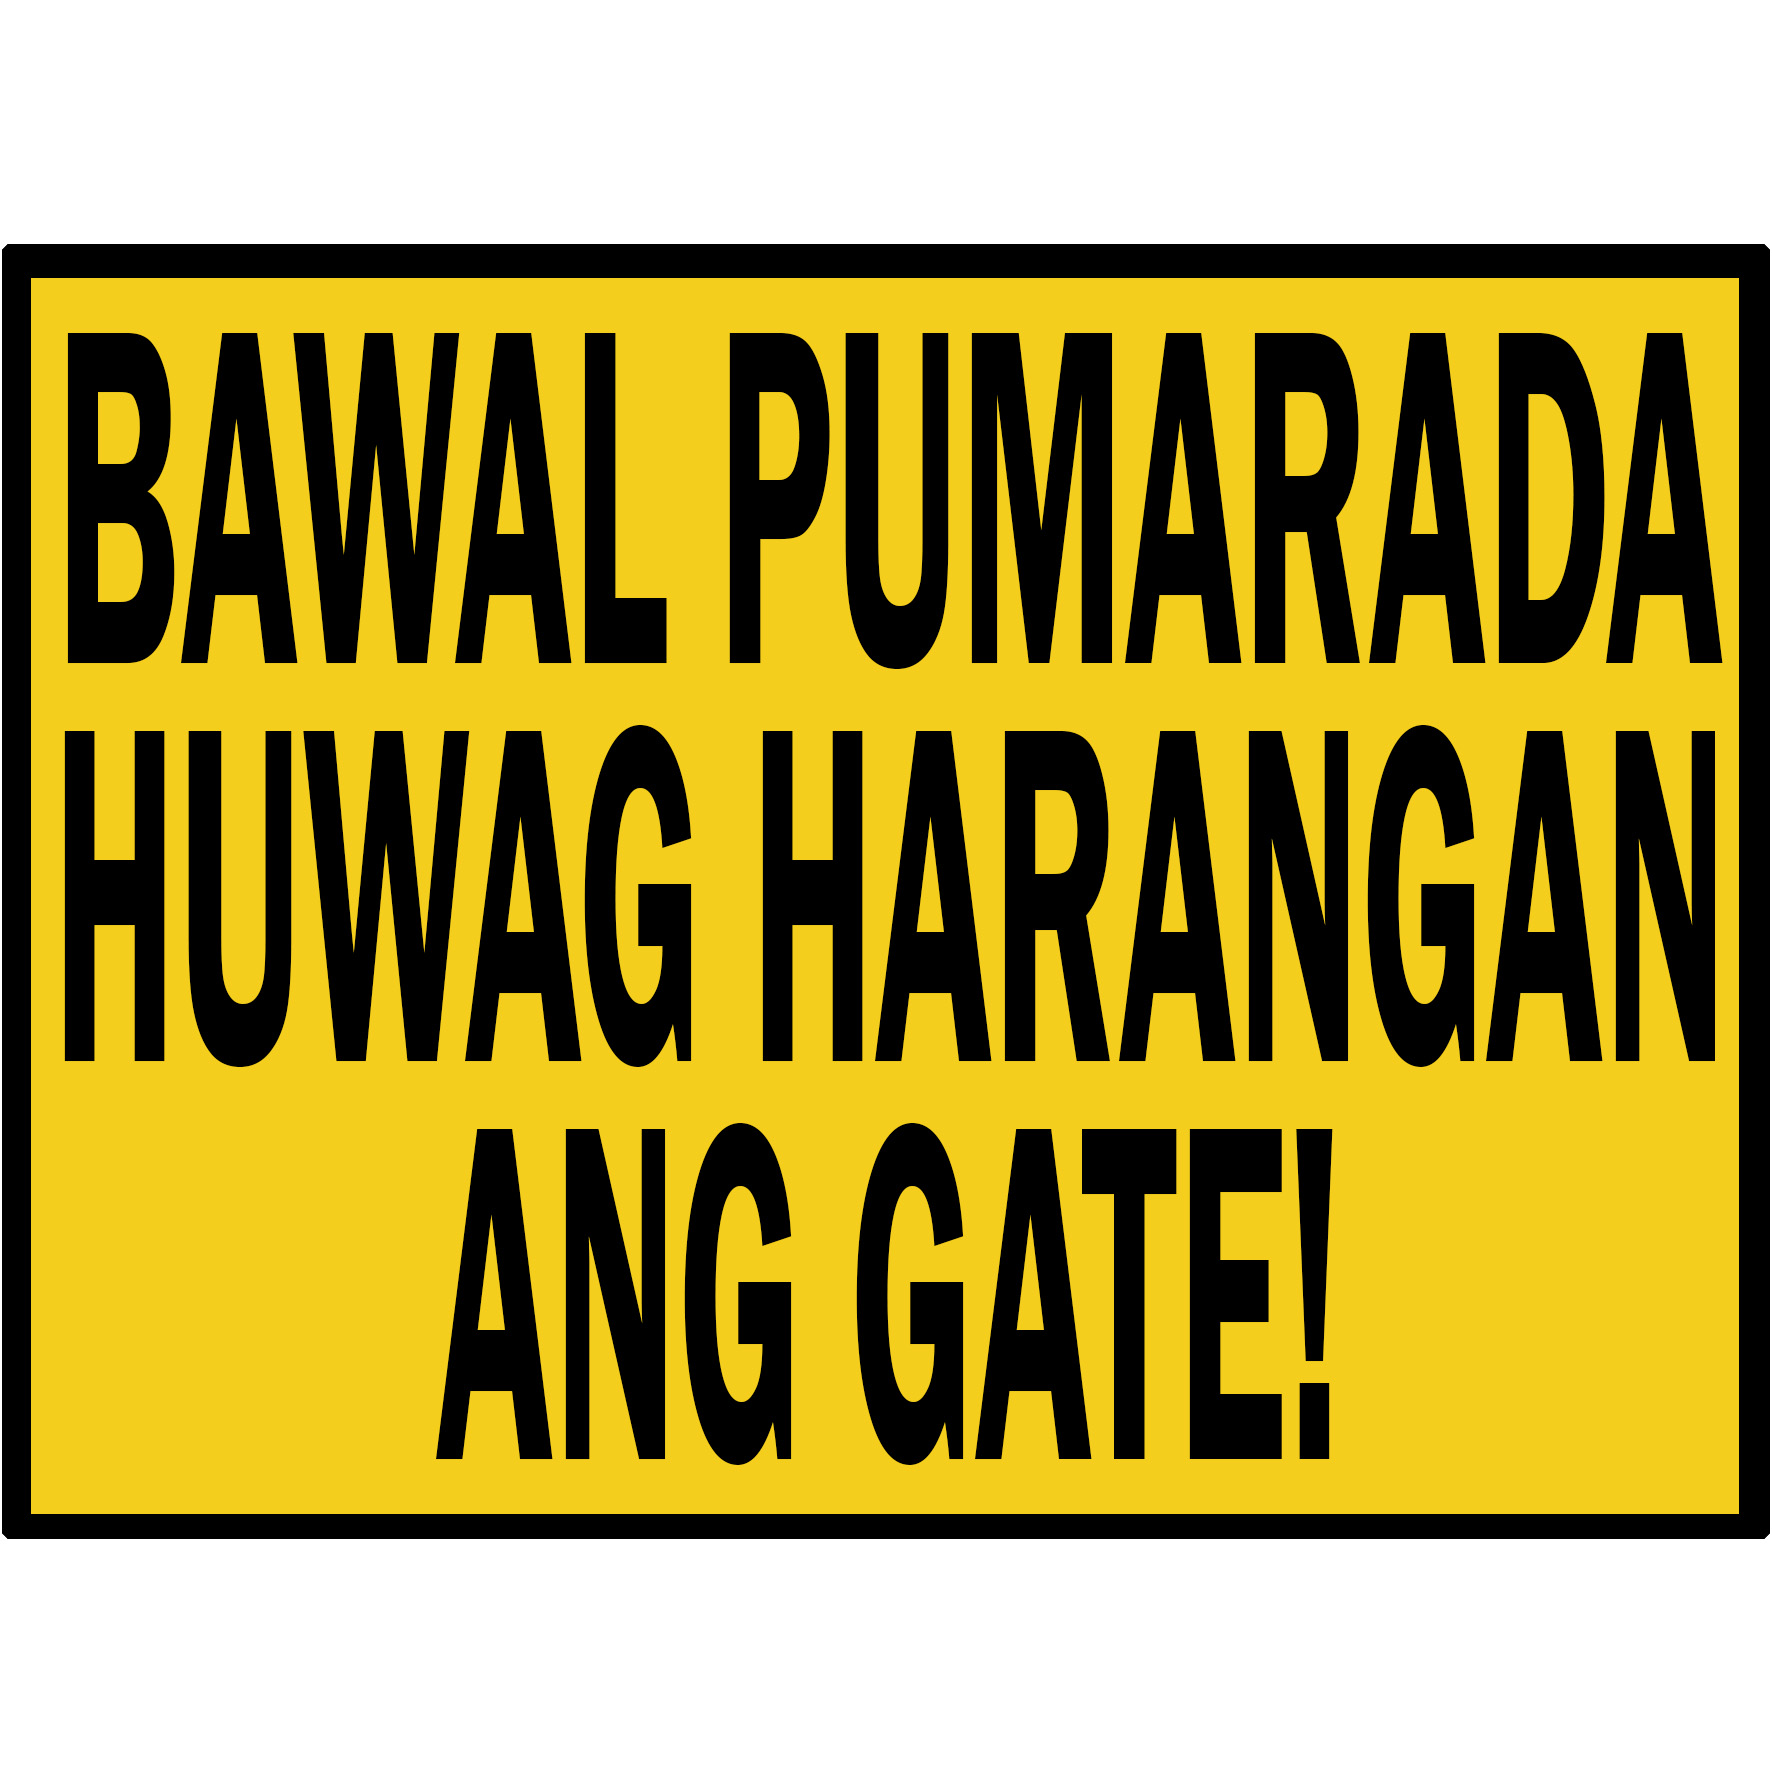 Huwag Harangan Ang Gate Sign Laminated Signage Sign B 8654